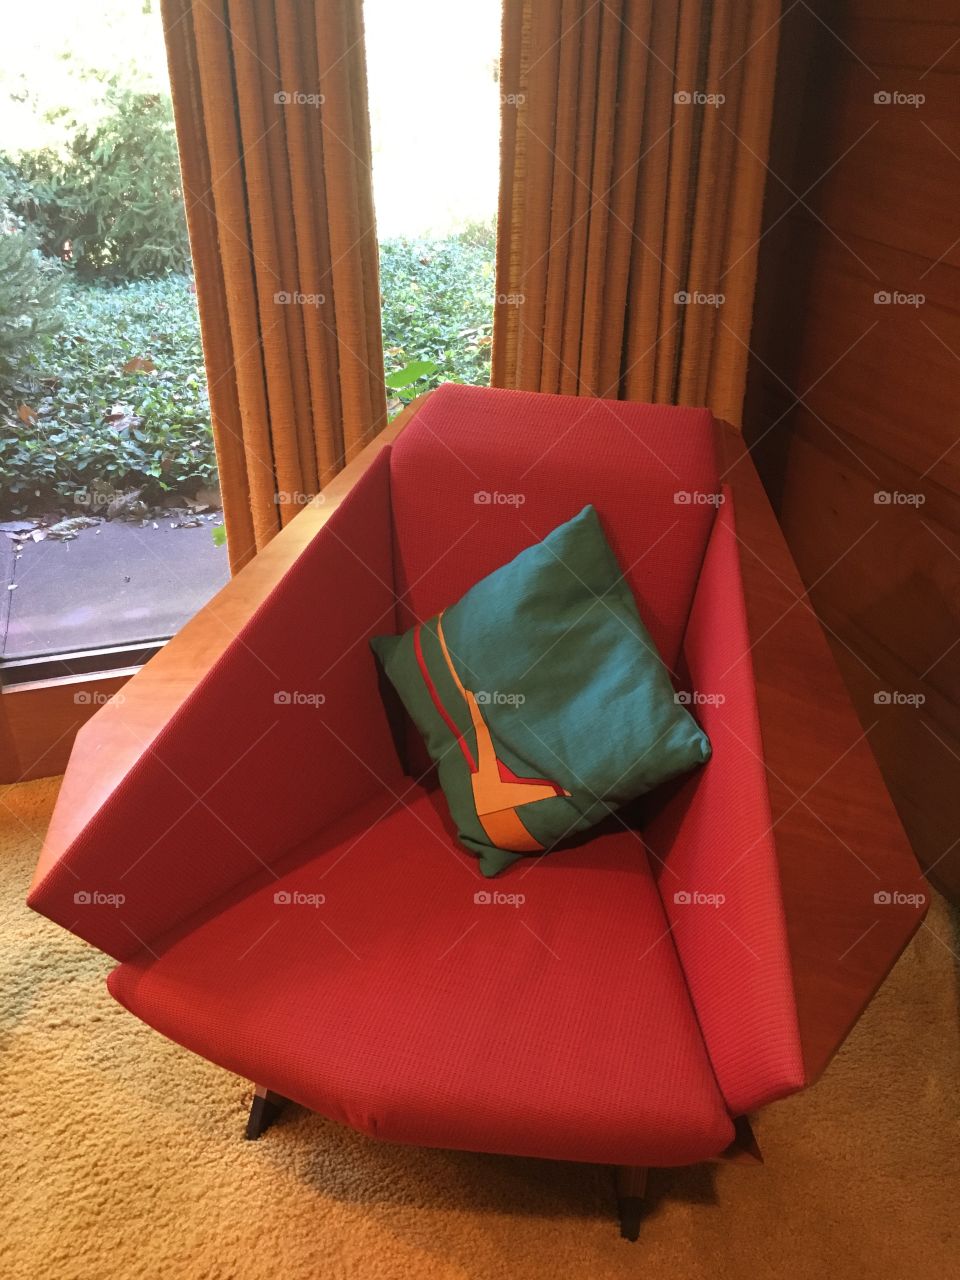 Frank Lloyd Wright Origami chair